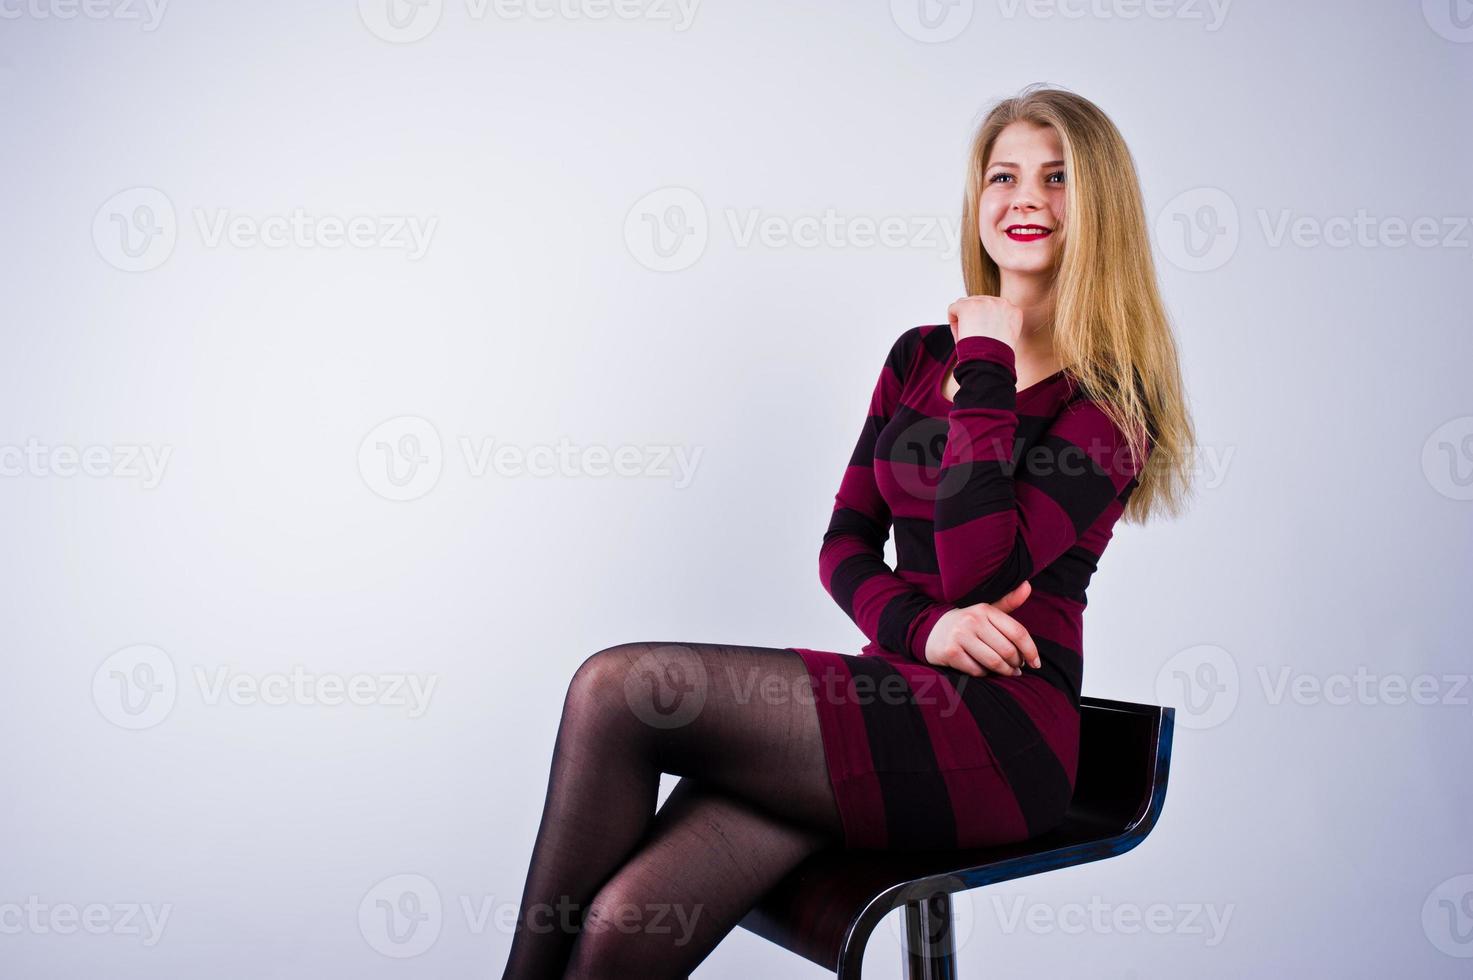 retrato de una mujer joven con un vestido morado a rayas sentado en la silla del estudio. foto